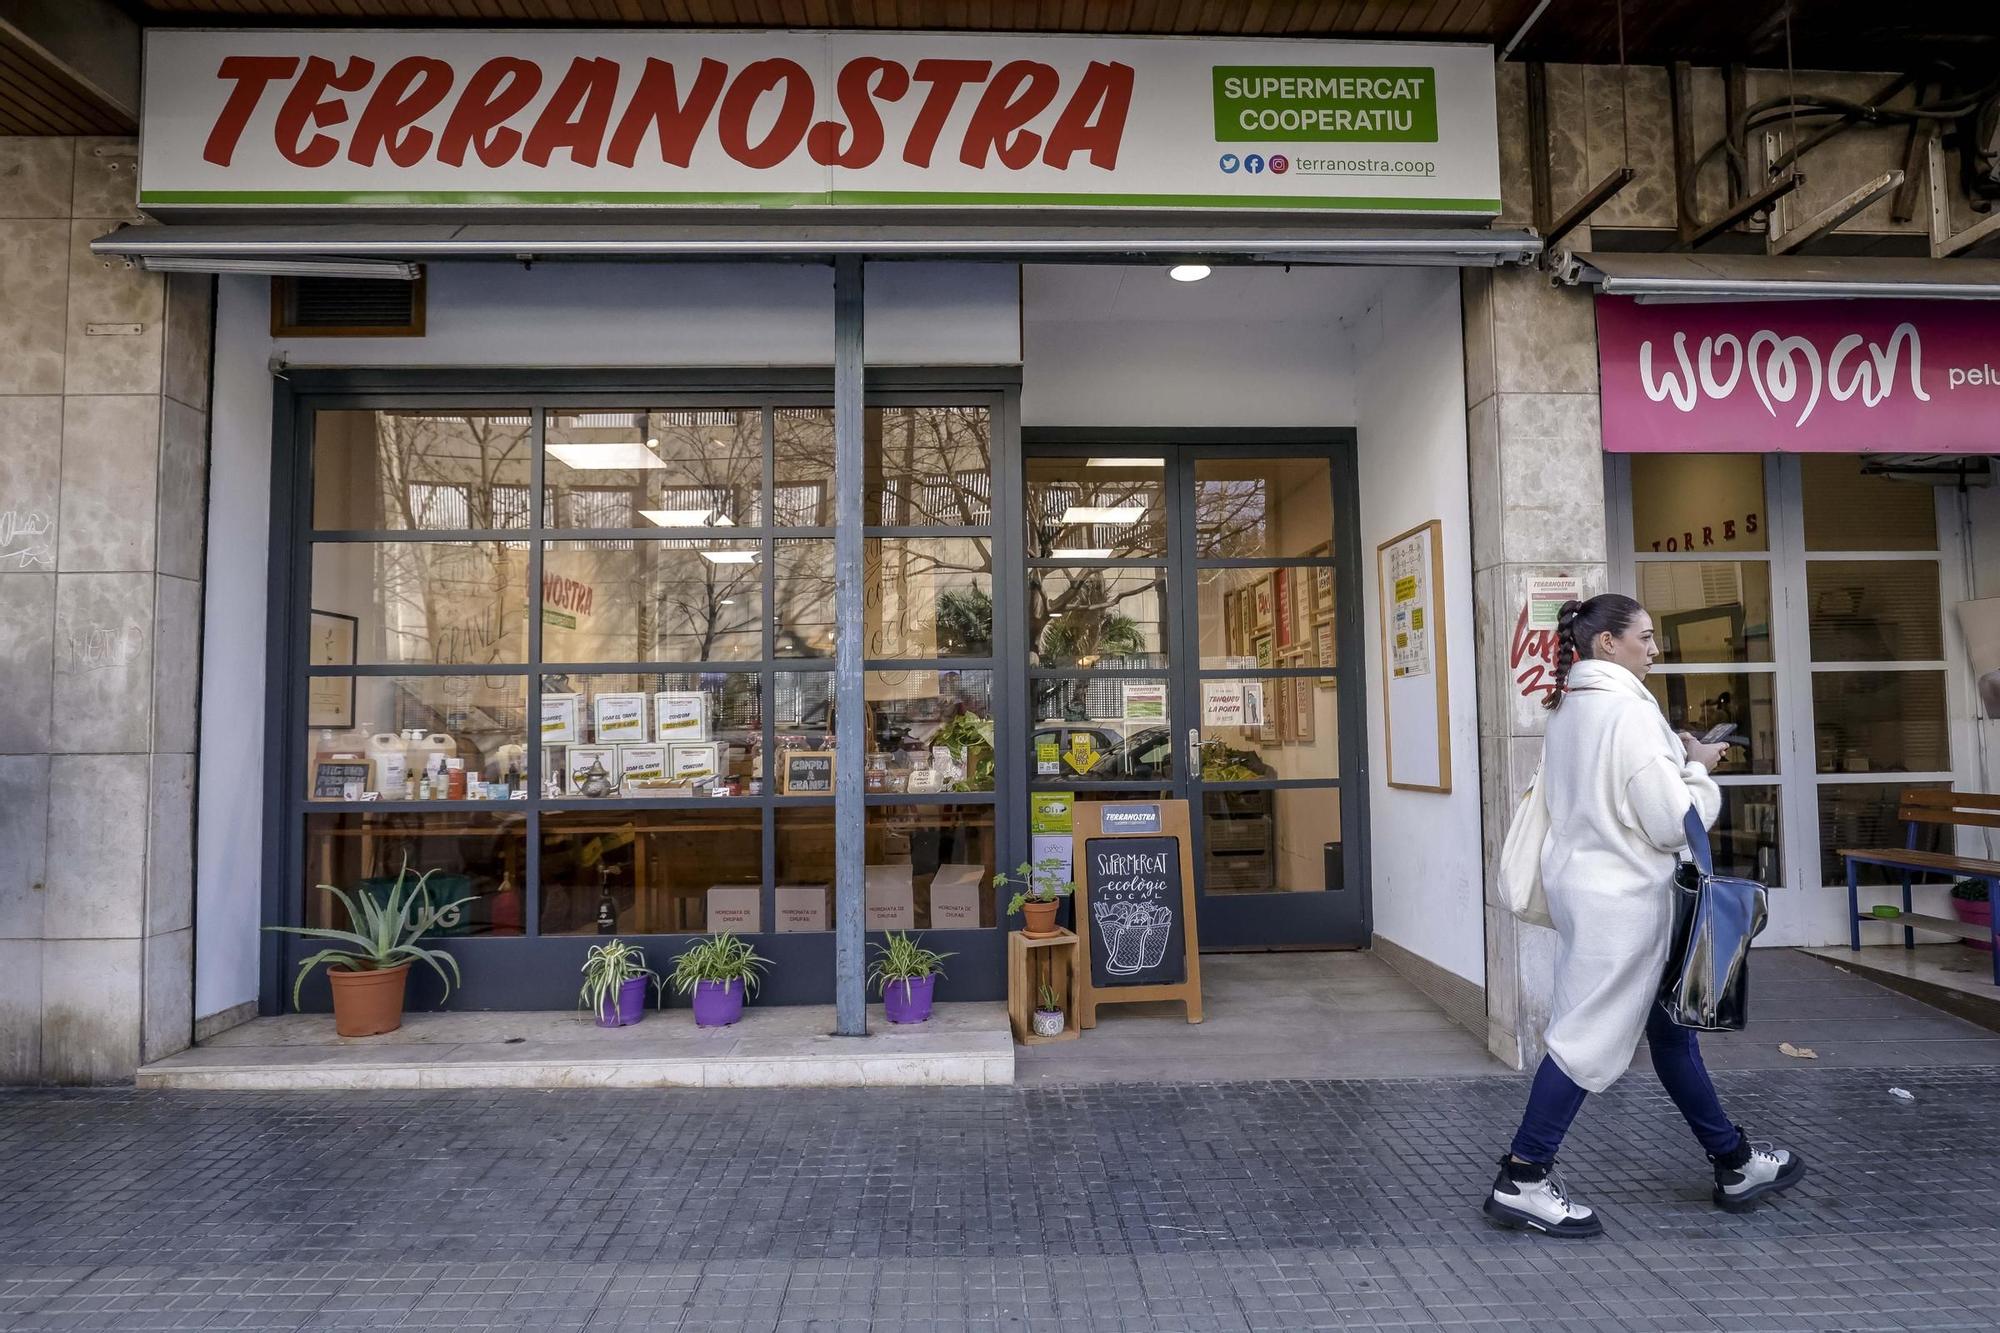 Das Geschäft von Terranostra liegt in der Nähe des Roten Kreuzes in Palma.